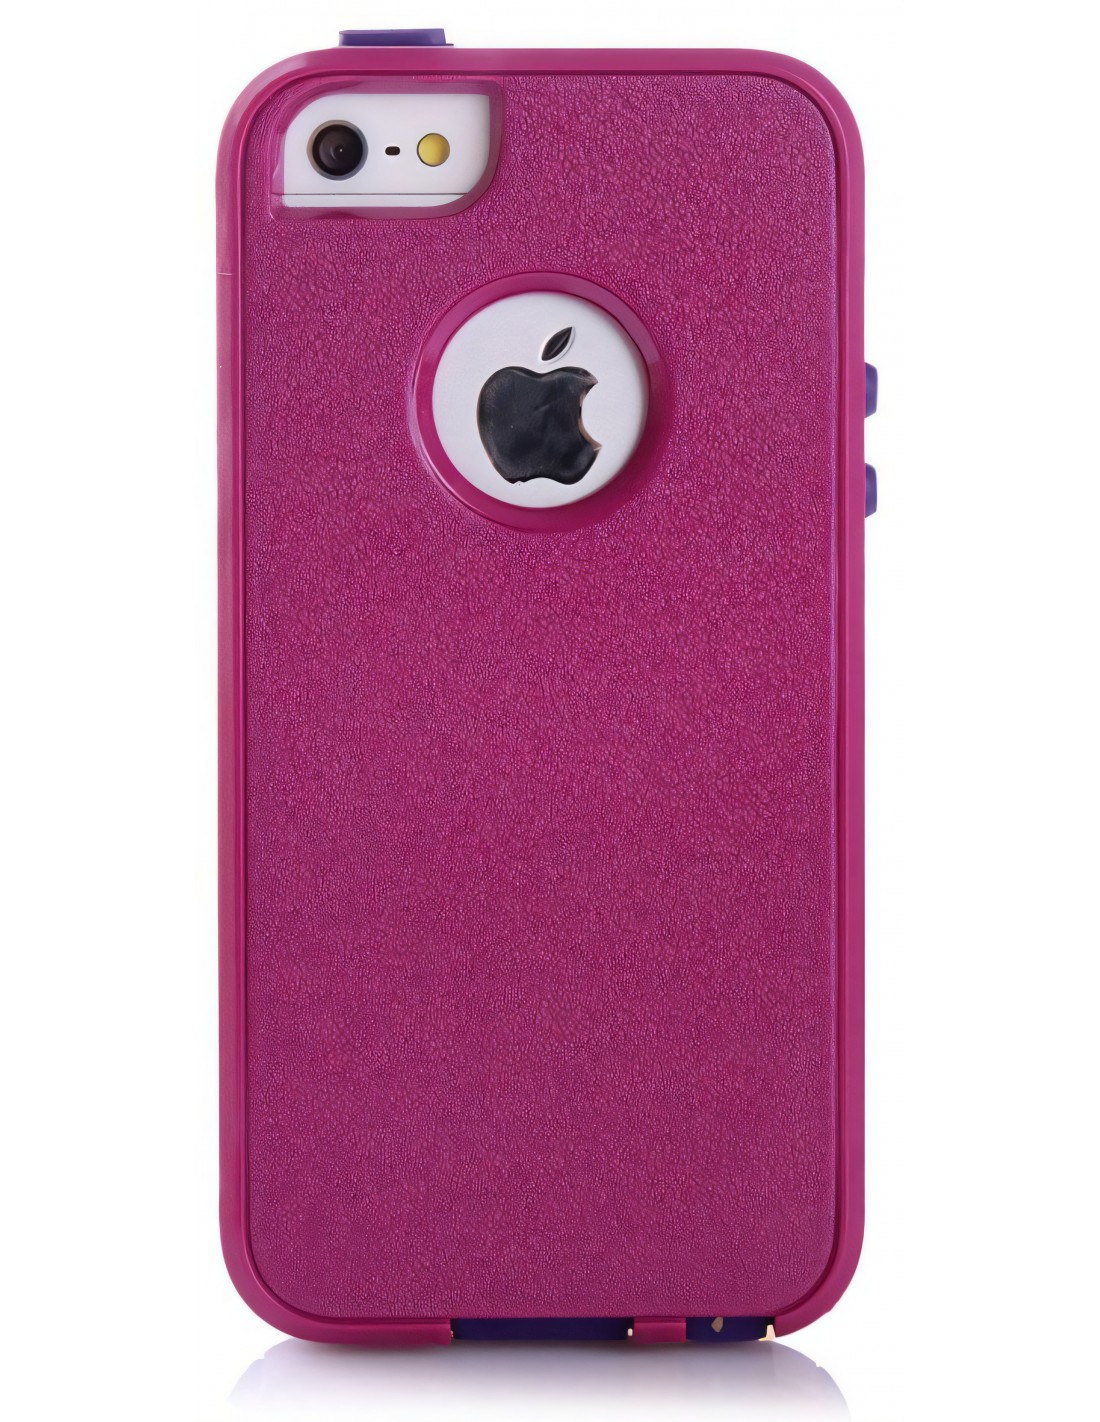 Coque Apple iPhone 5S et 5 Silicone Hybrid résistante Violet